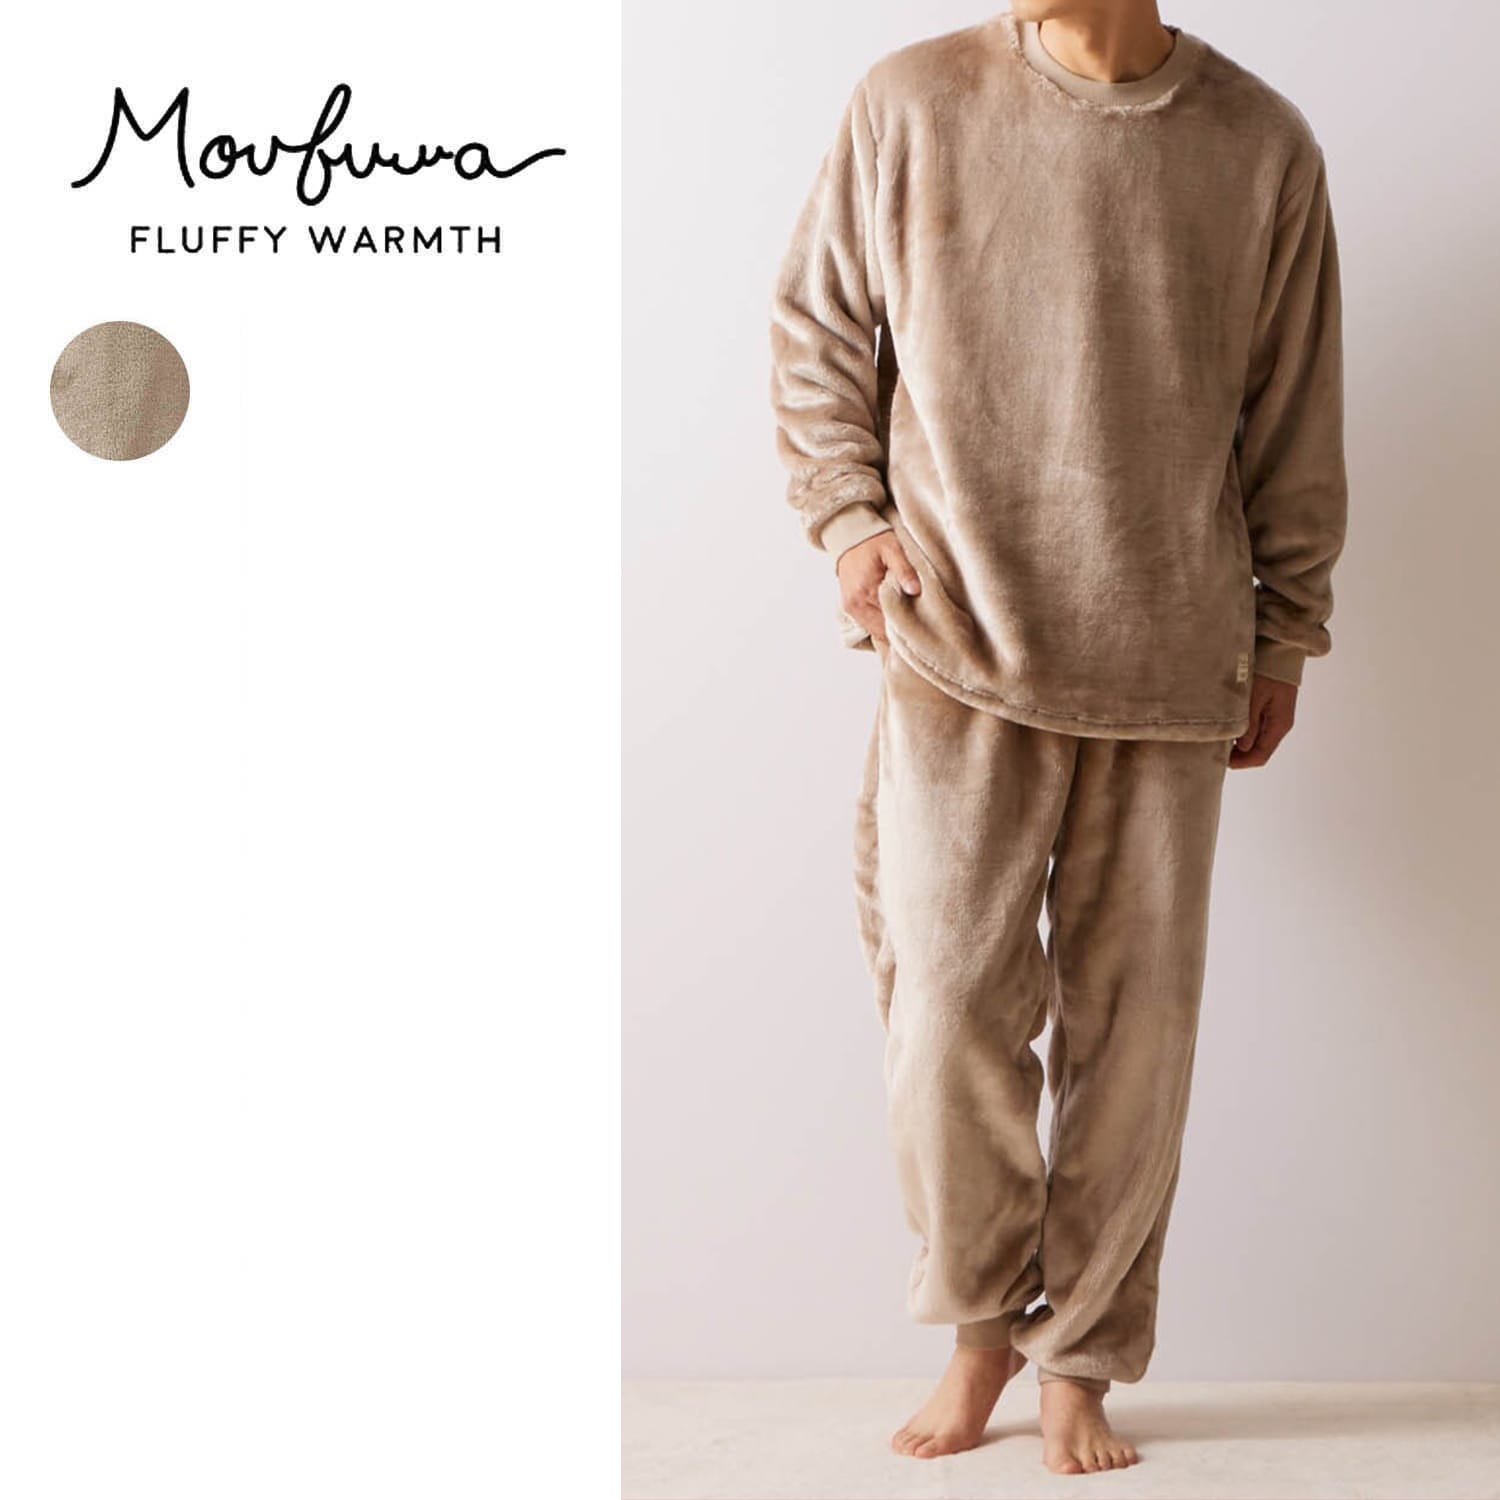 【モウフワ/moufuwa】毛布に包まれた様な温もりのユニセックスフリースパジャマ